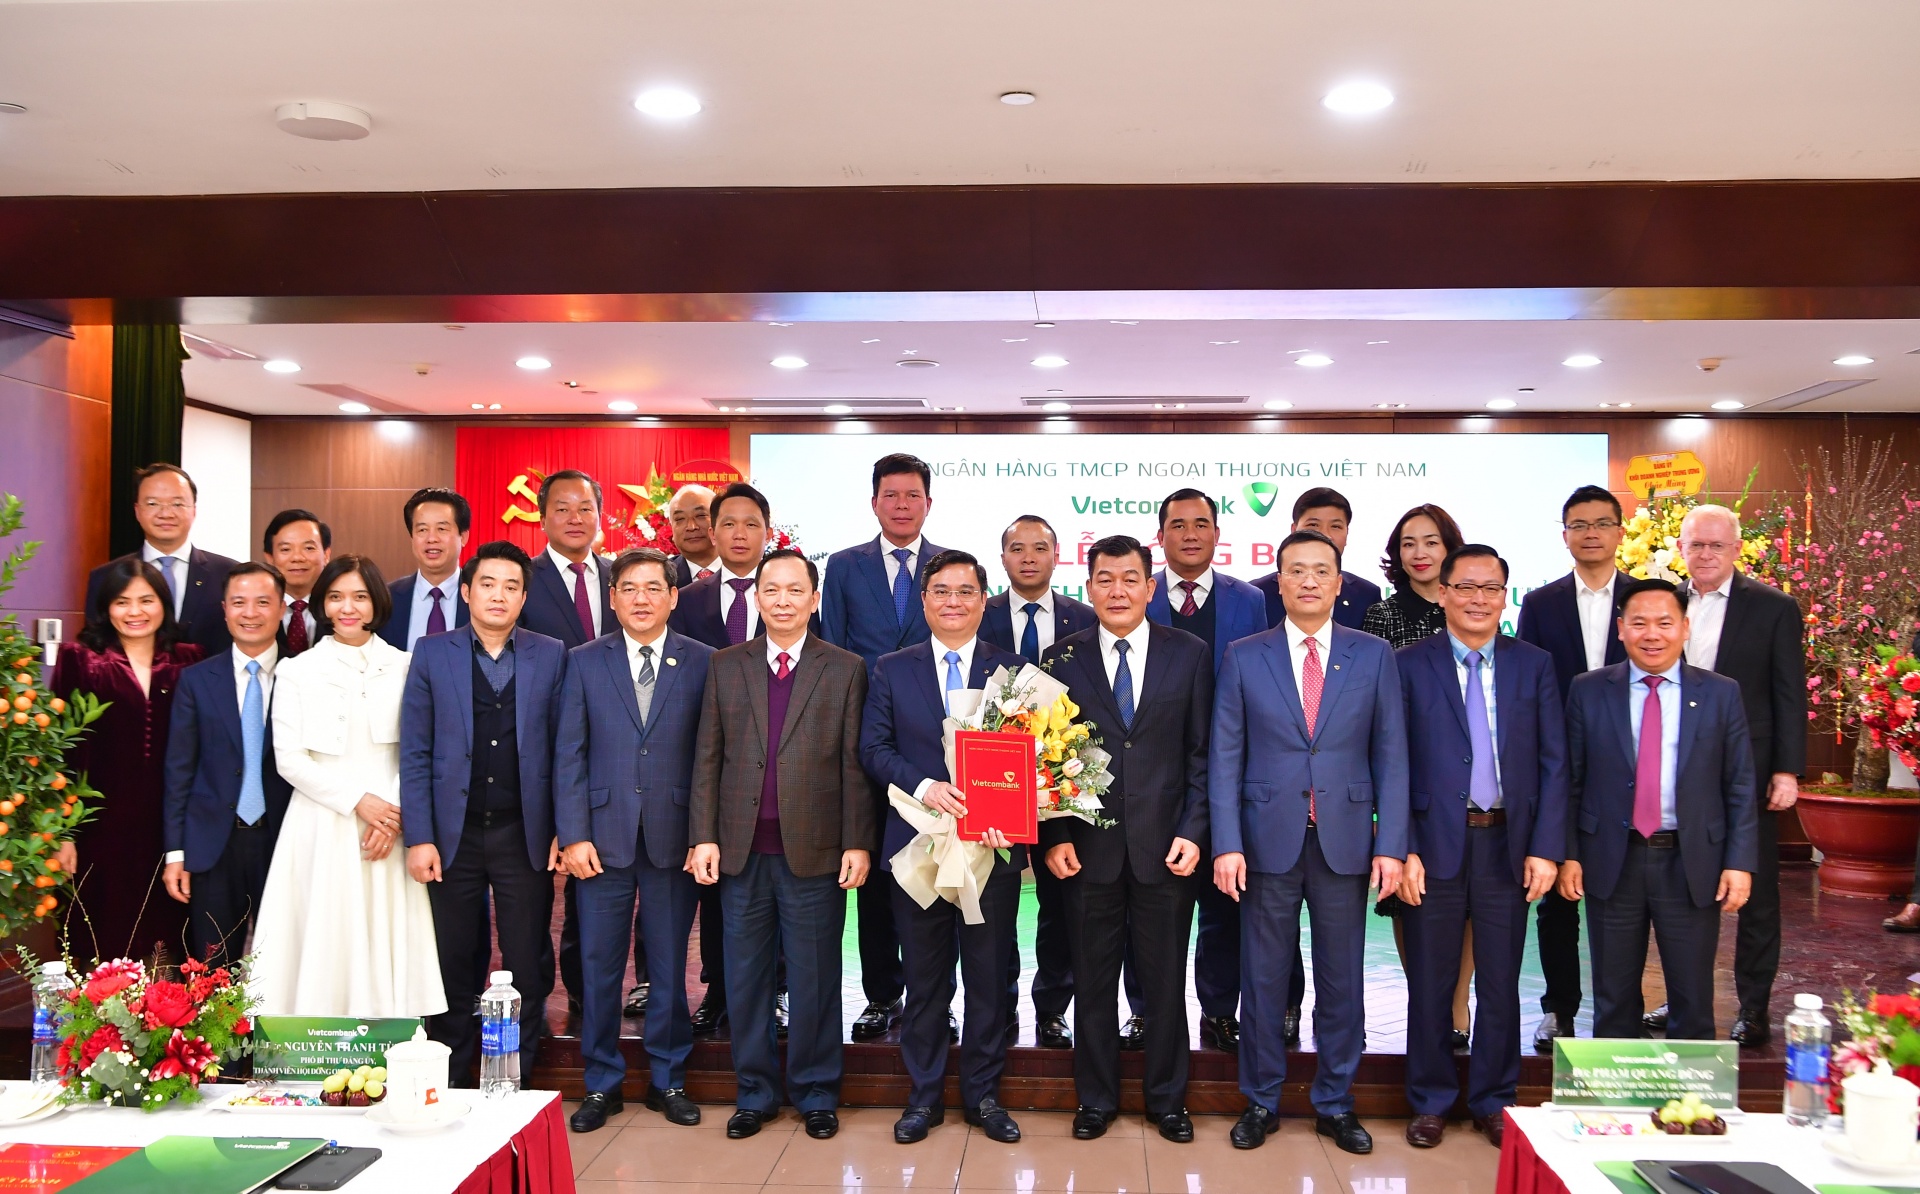 Quyết định chuẩn y Phó Bí thư Đảng ủy và bổ nhiệm Tổng Giám đốc Vietcombank